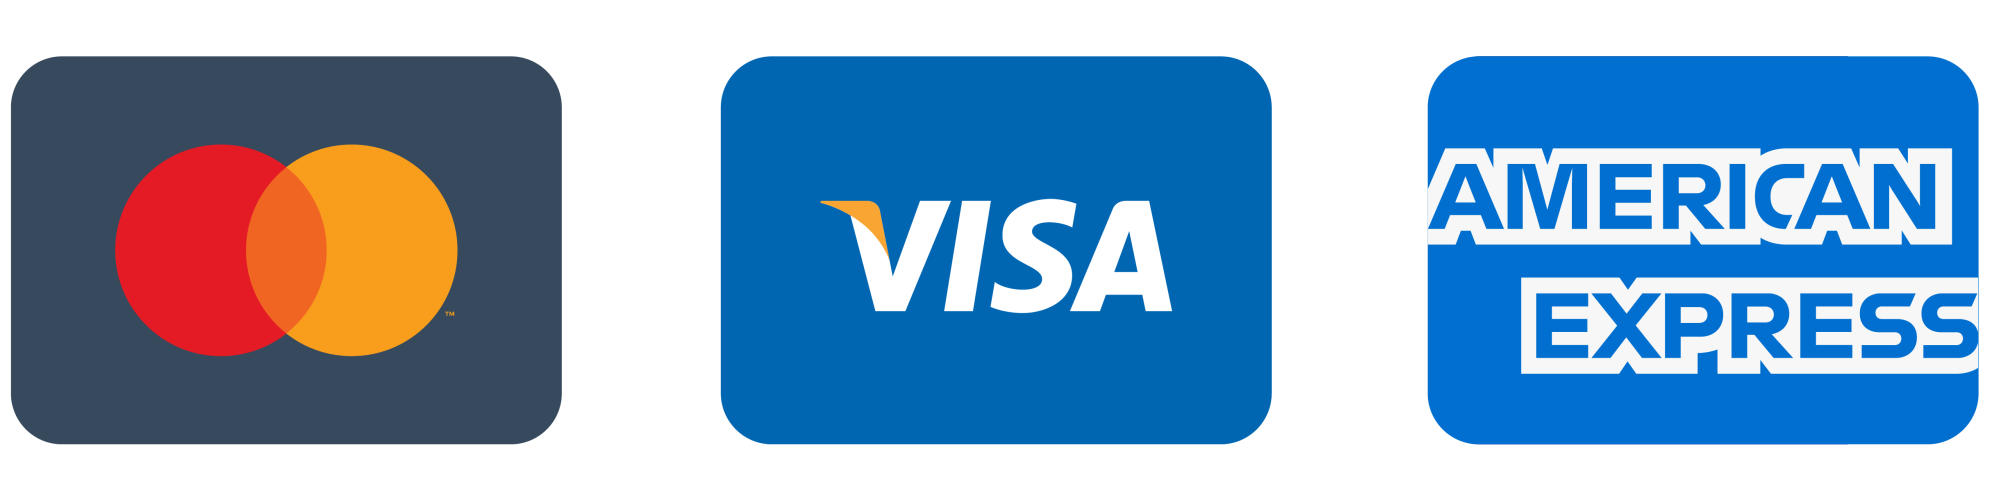 Nós aceitamos a maioria dos cartões de credito incluindo Mastercard, Visa, Maestro e American Express.